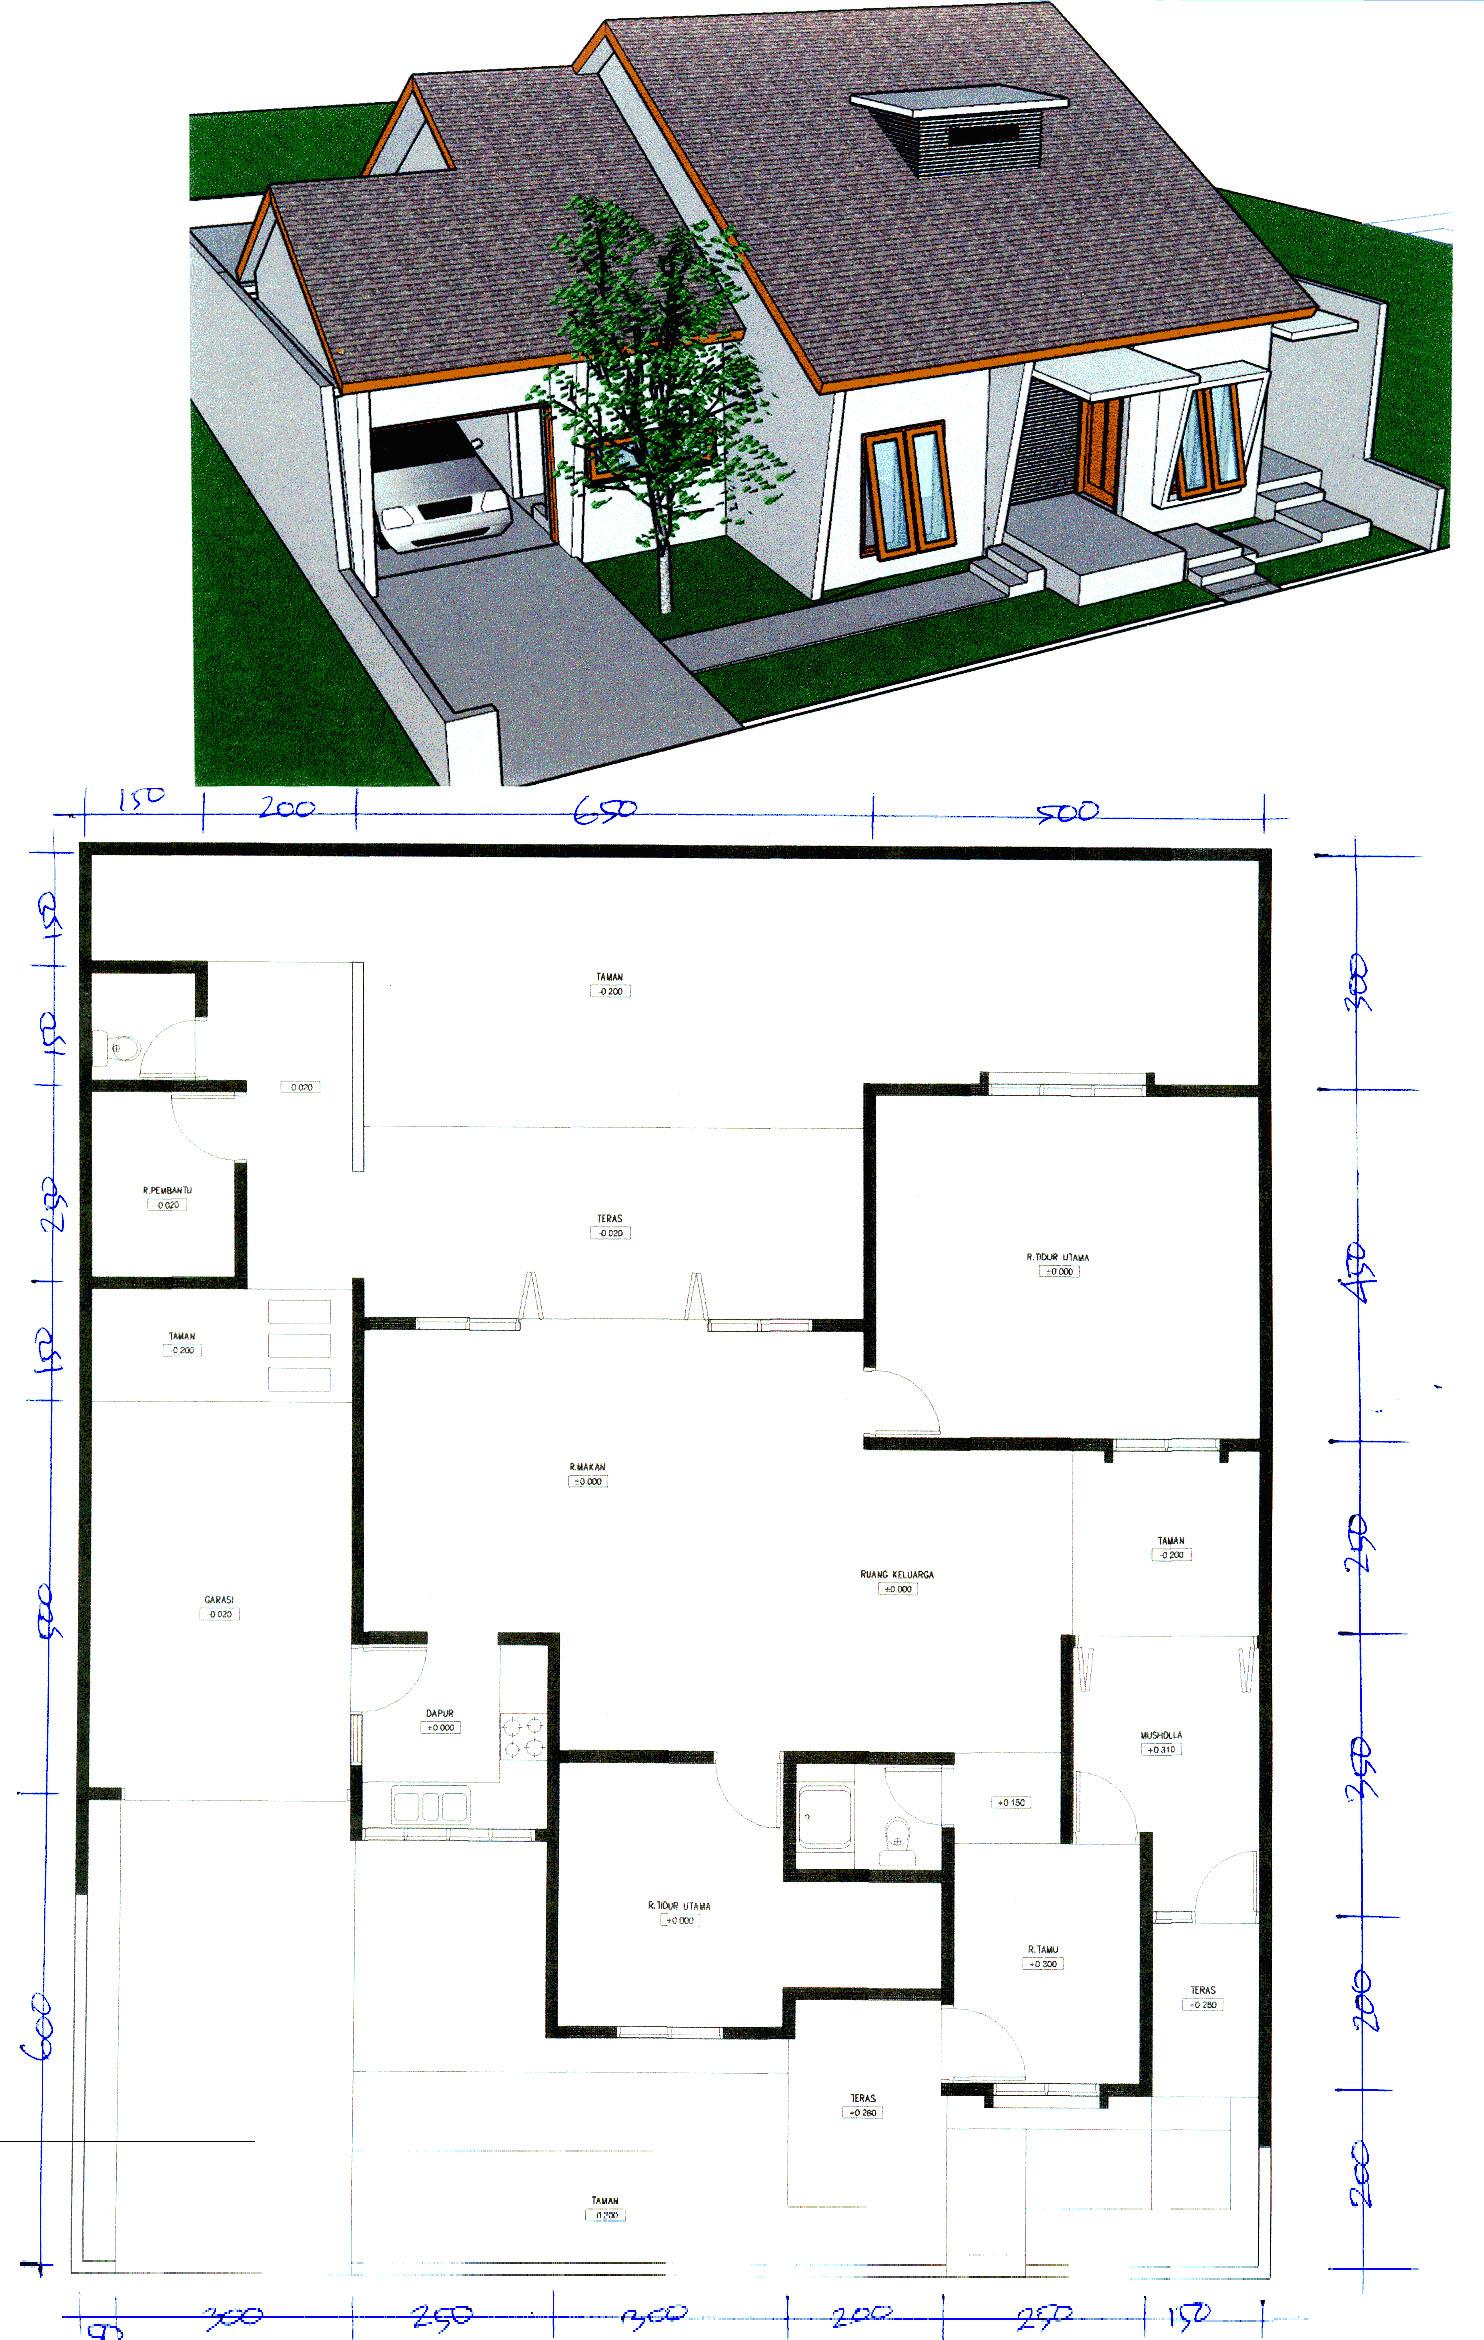 Desain Rumah Minimalis Ukuran 6 X 12